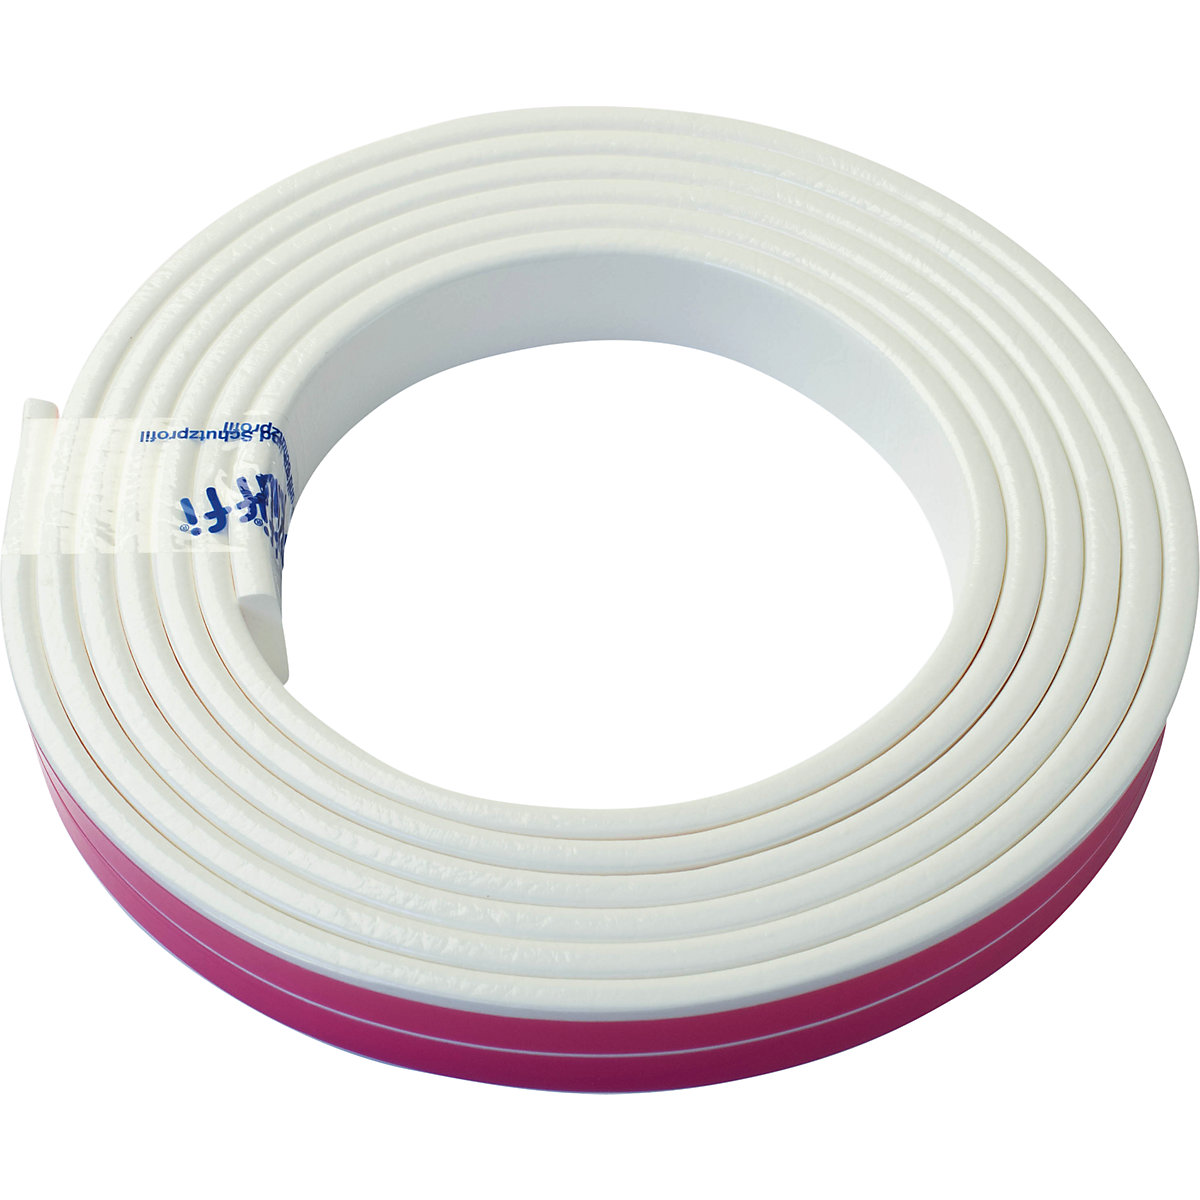 Protection des surfaces Knuffi® – SHG, type F, 1 rouleau de 5 m, blanc-18